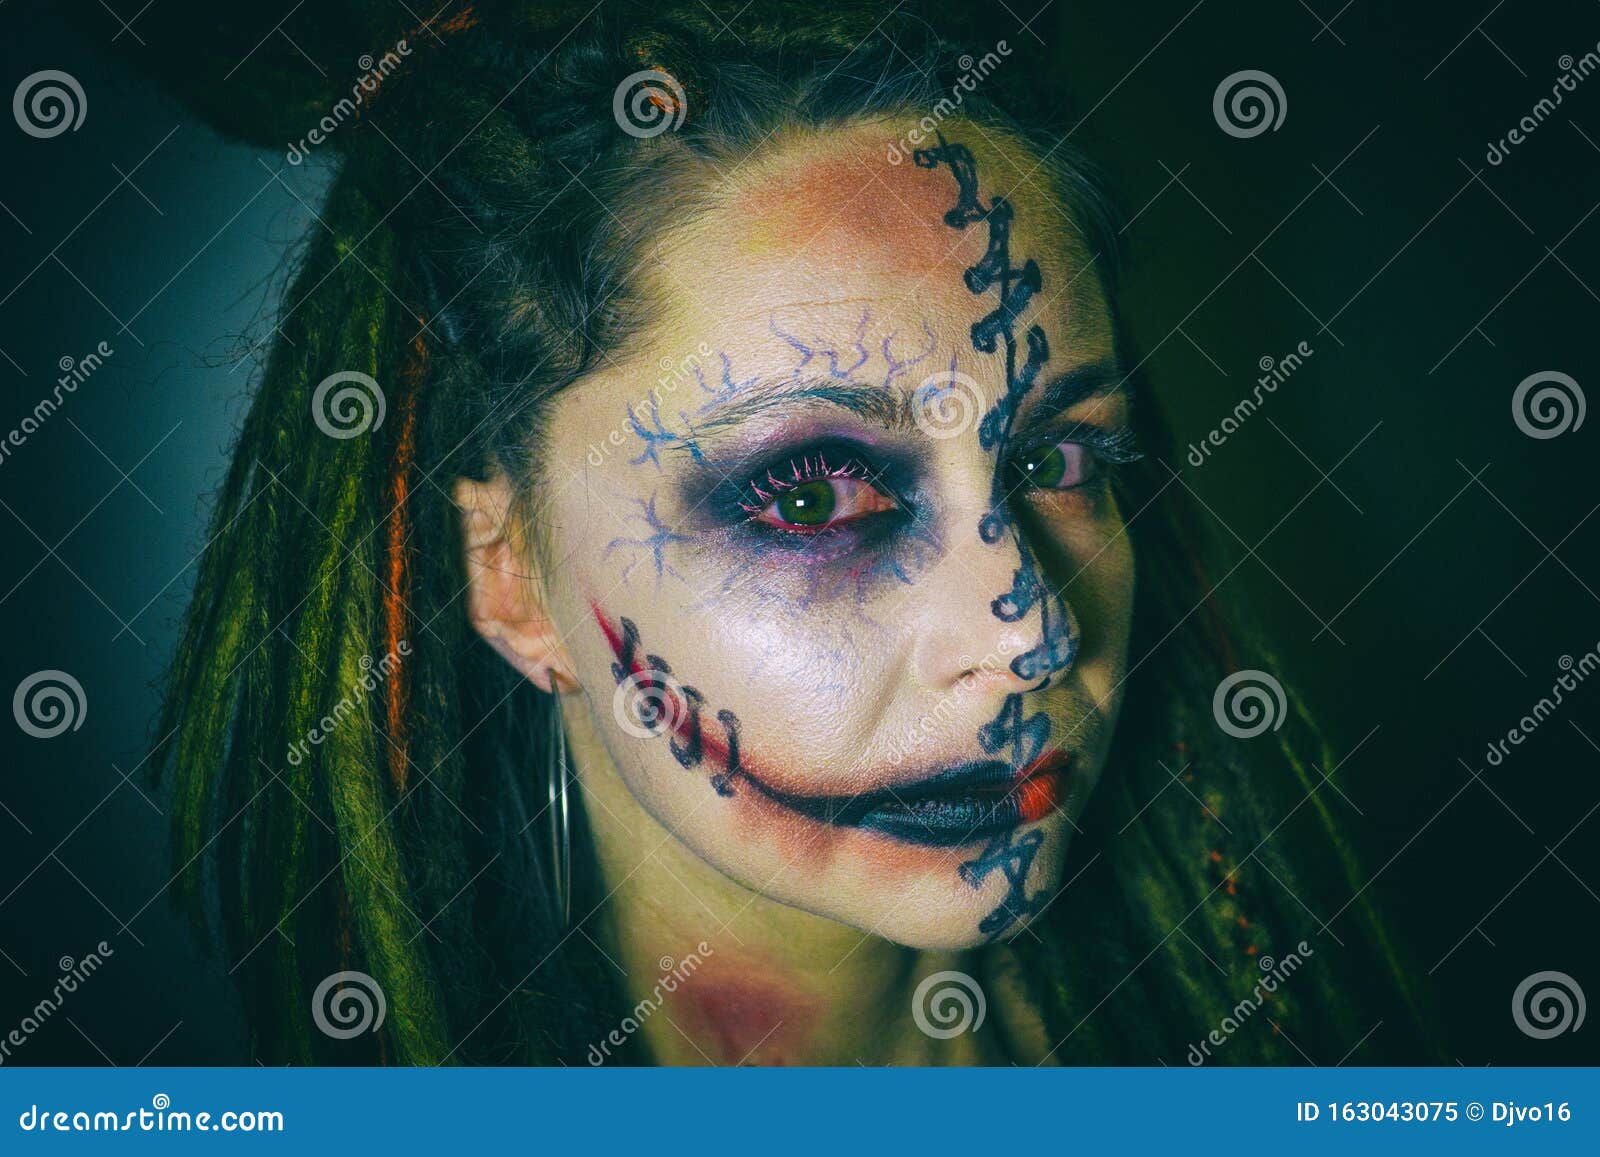 76 Best Cool face paint ideas  halloween makeup, fantasy makeup, halloween  make up